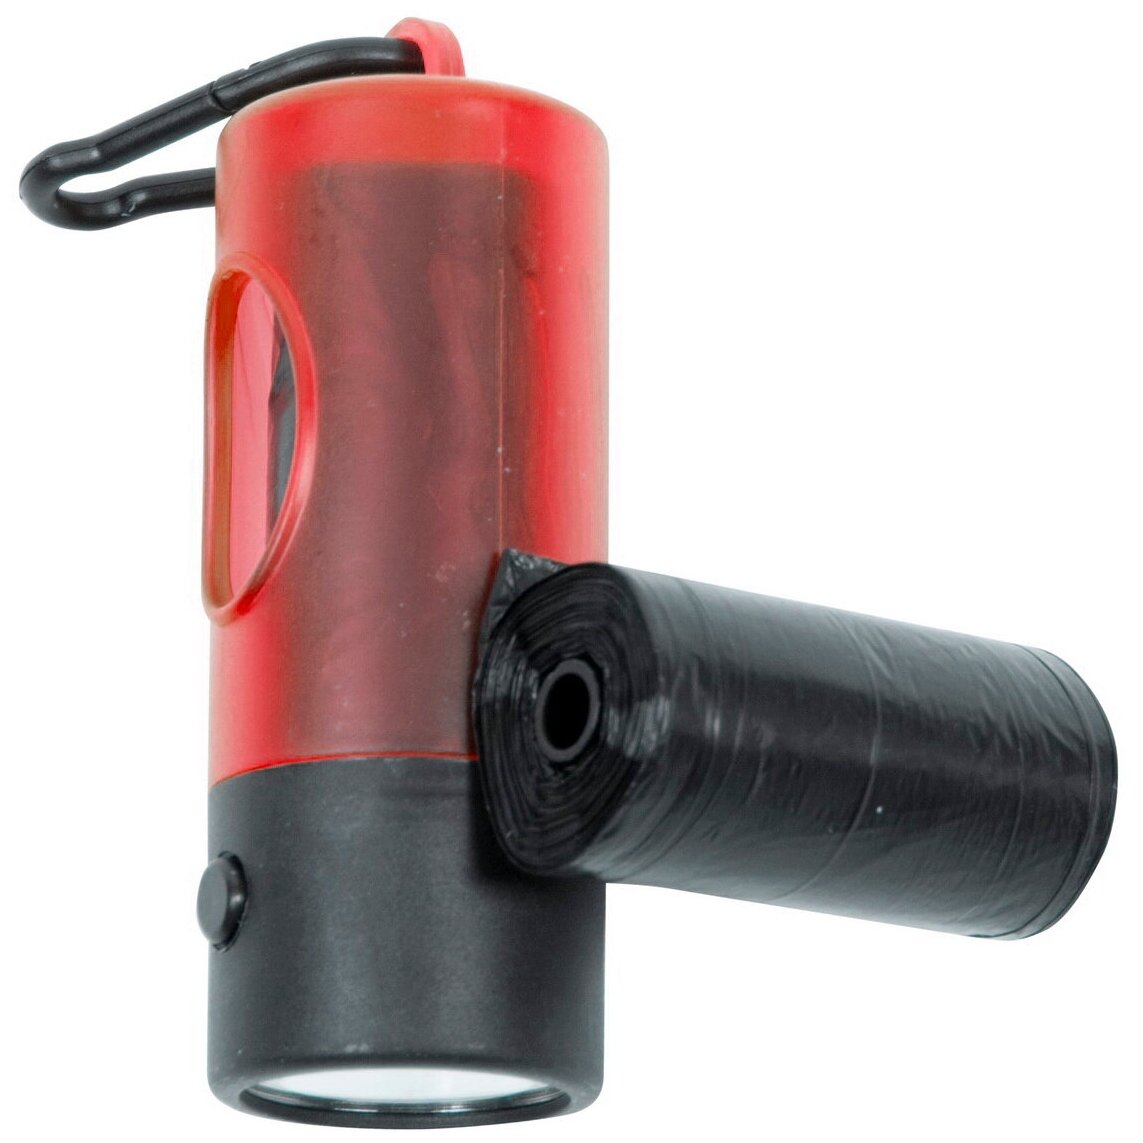 Контейнер для гигиенических пакетов с фонариком, DUVO+ красный, 2рул. х20шт пакетов (Бельгия)